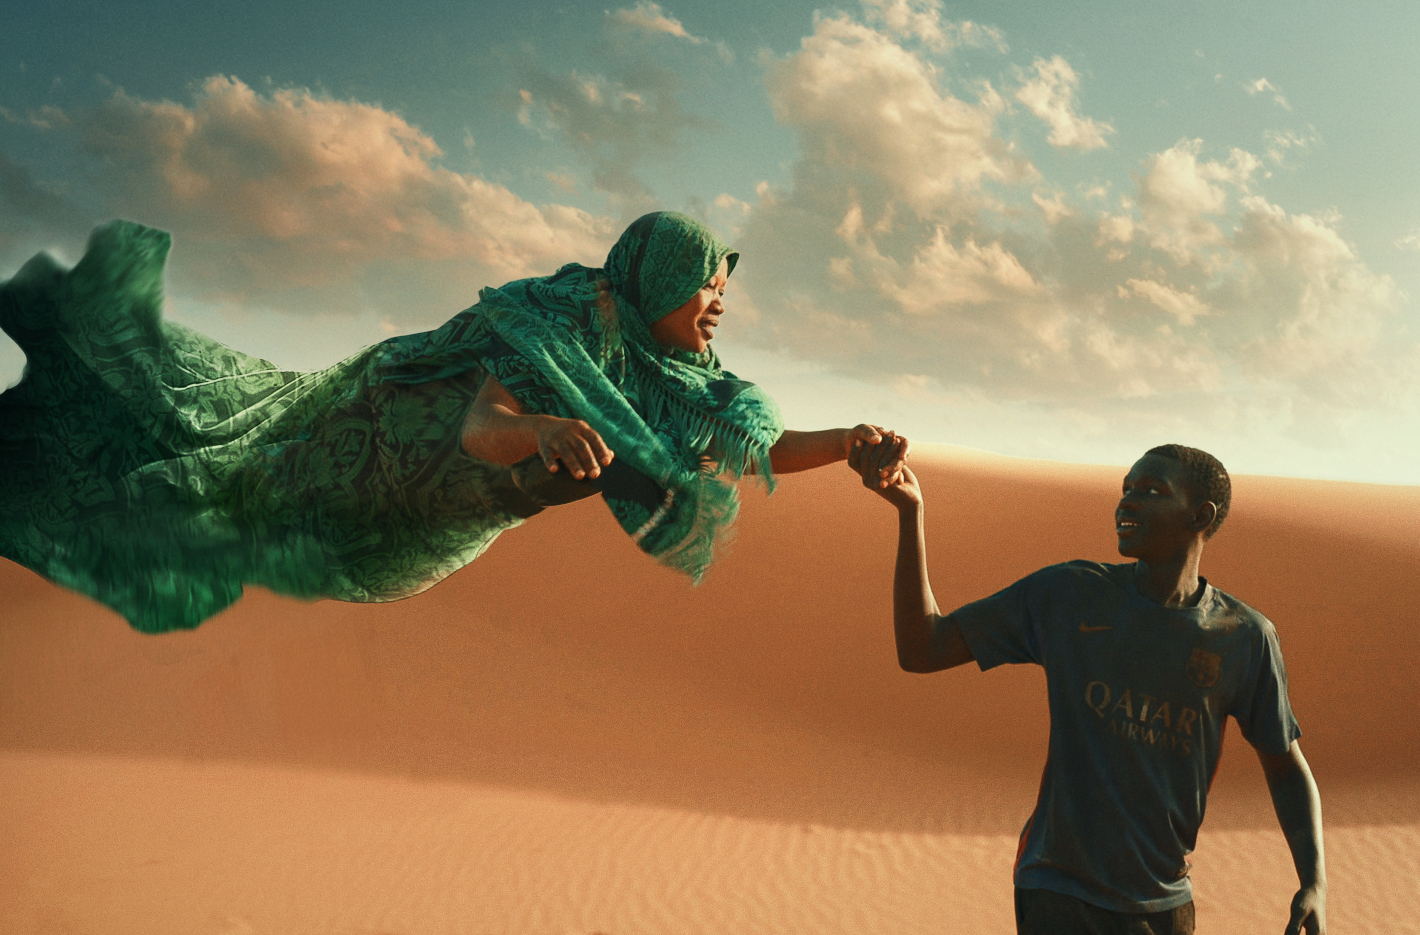 Mladý muž tmavé pleti drží za ruku ženu, která létá. Za nimi je písečná duna.